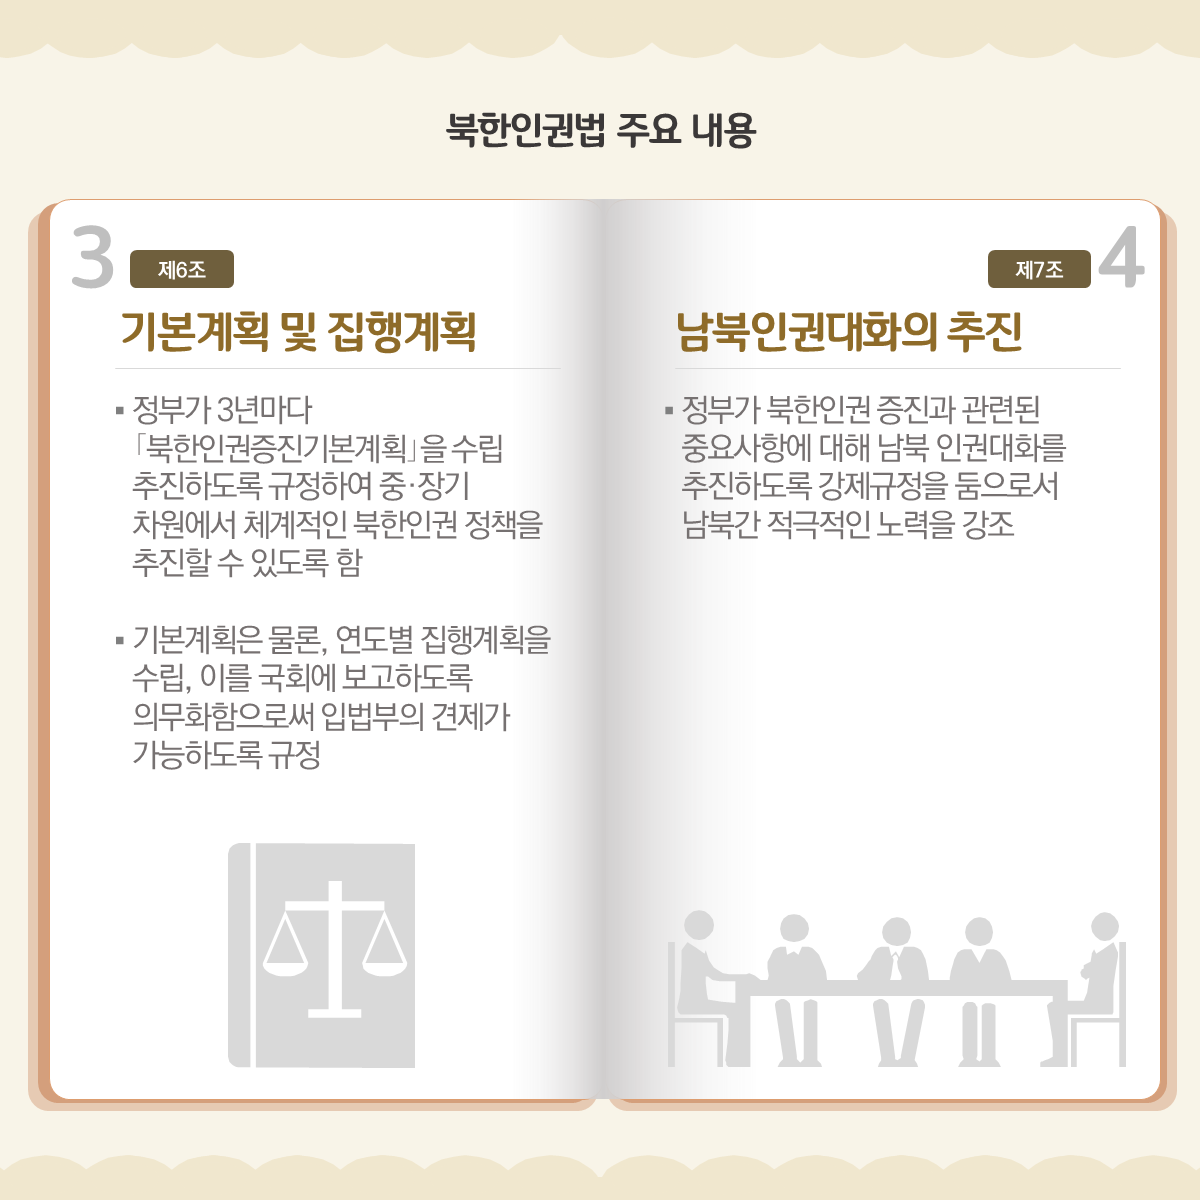 북한인권법 주요 내용
기본계획 및 집행 계획
남북인권대화의 추진